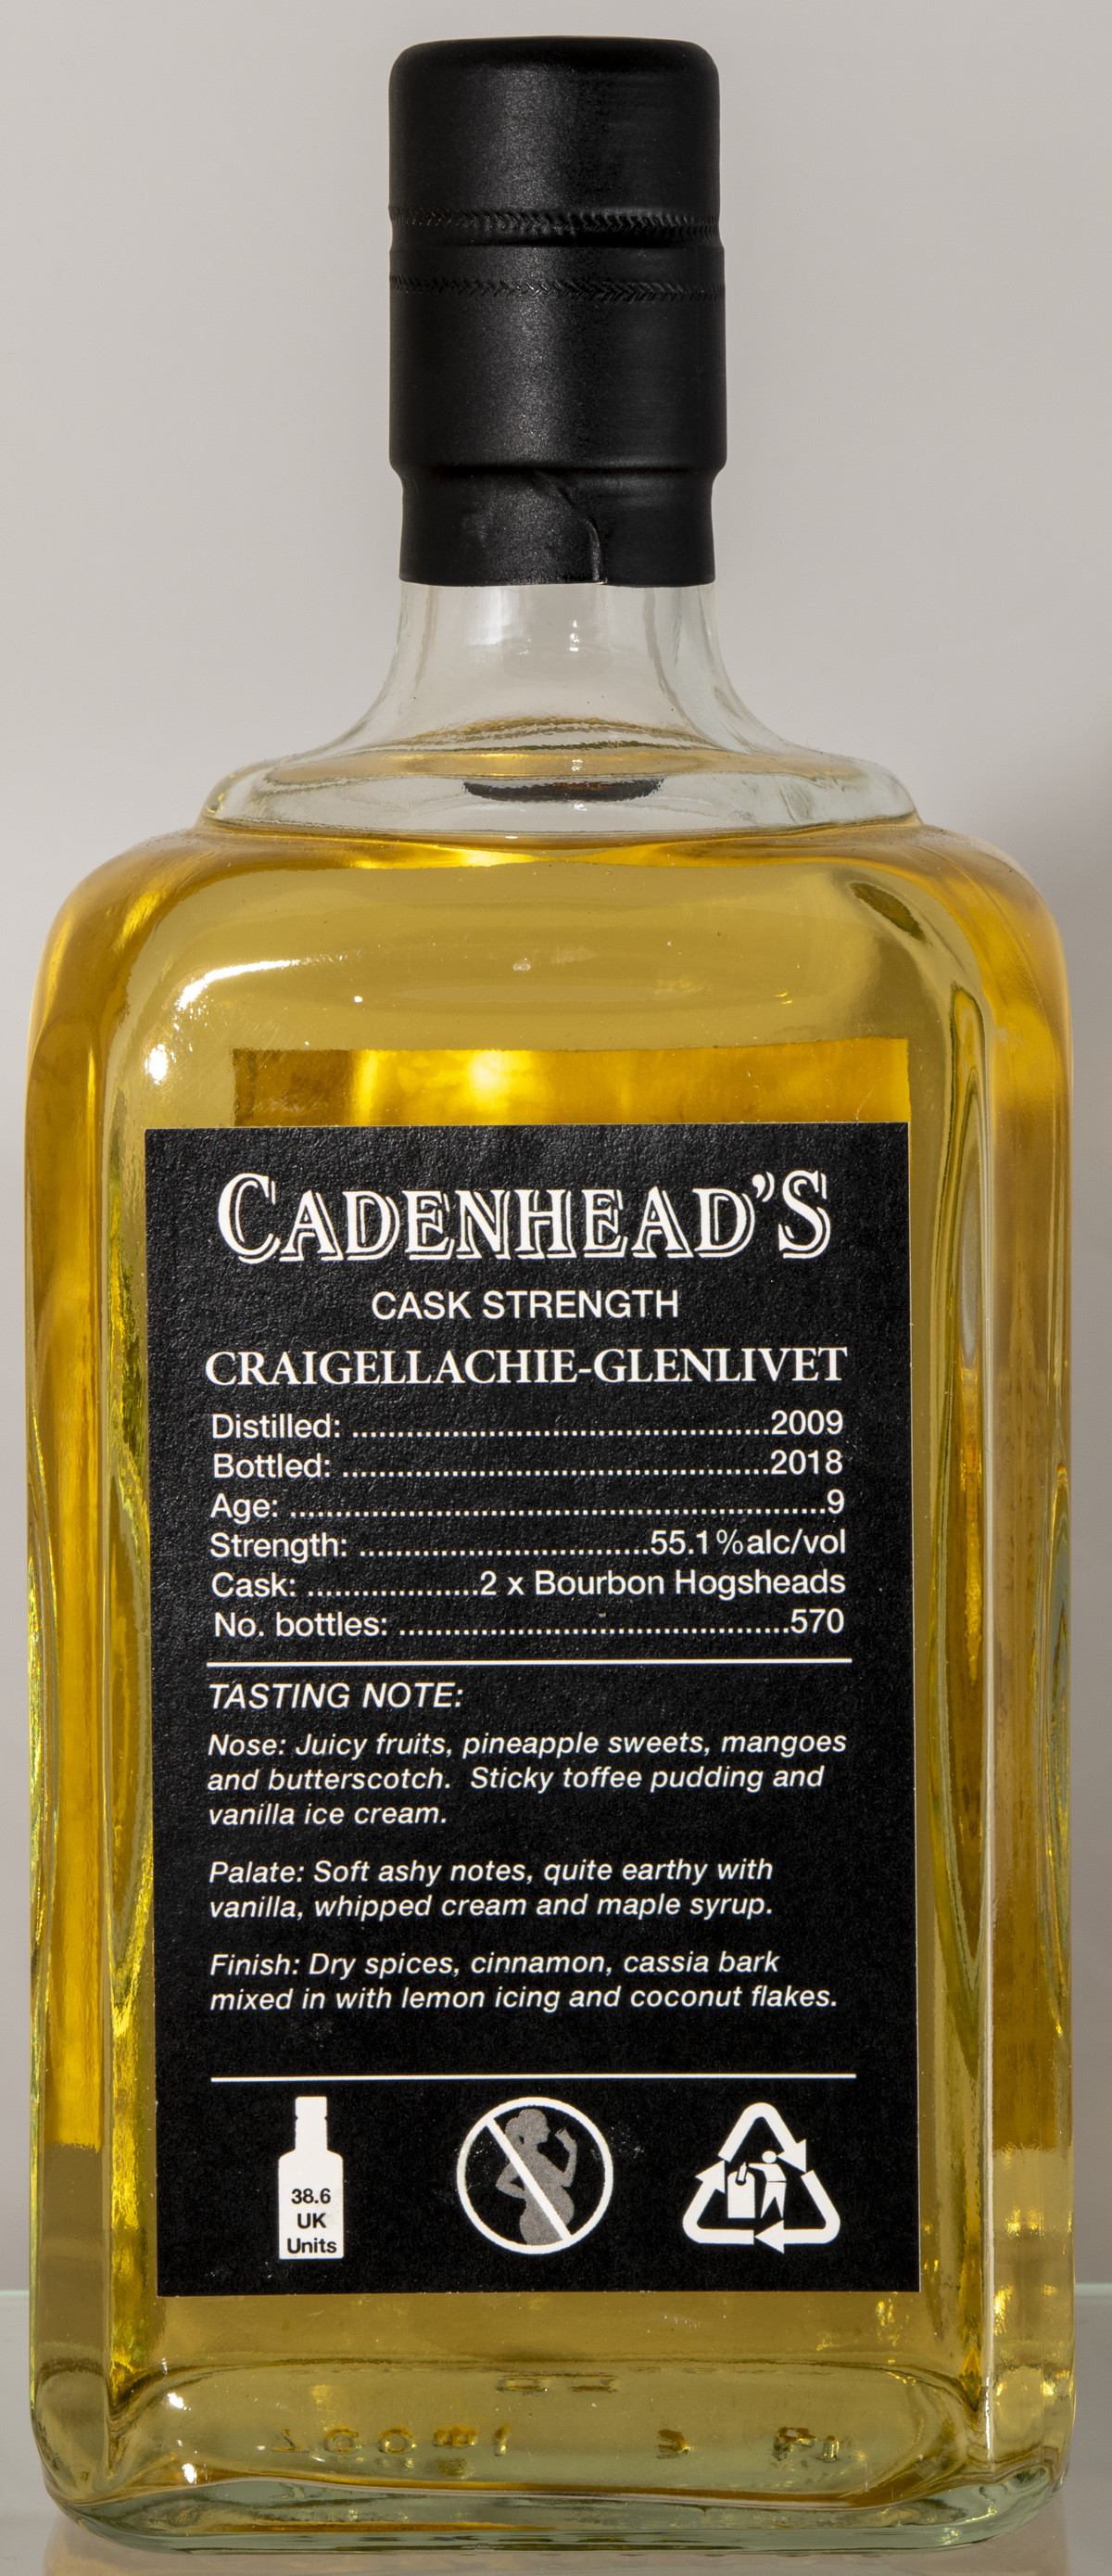 Billede: D85_8329 - Cadenhead Small Batch - Craigellachie-Glenlivet 9 - bottle back.jpg